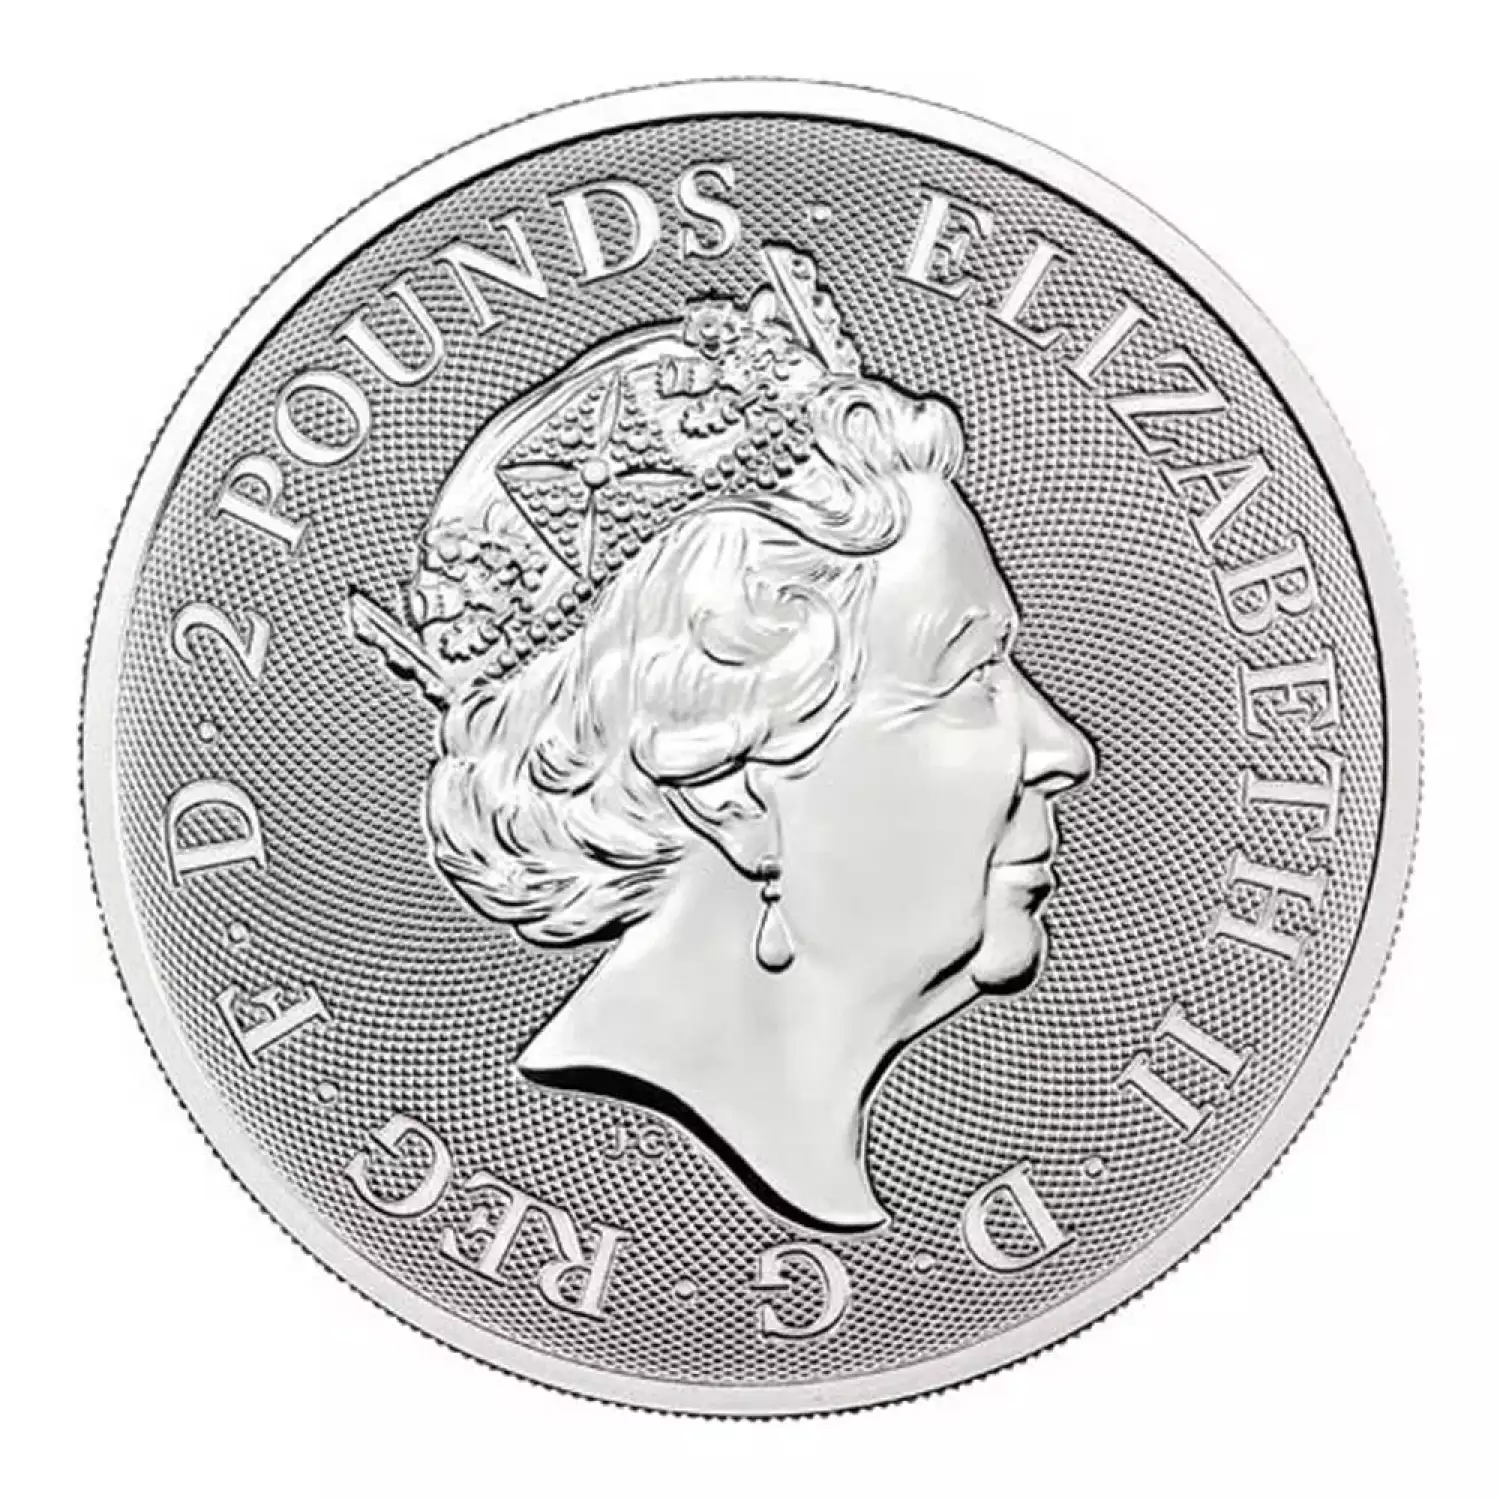 2021 1 oz Royal Mint Silver Valiant Coin (3)